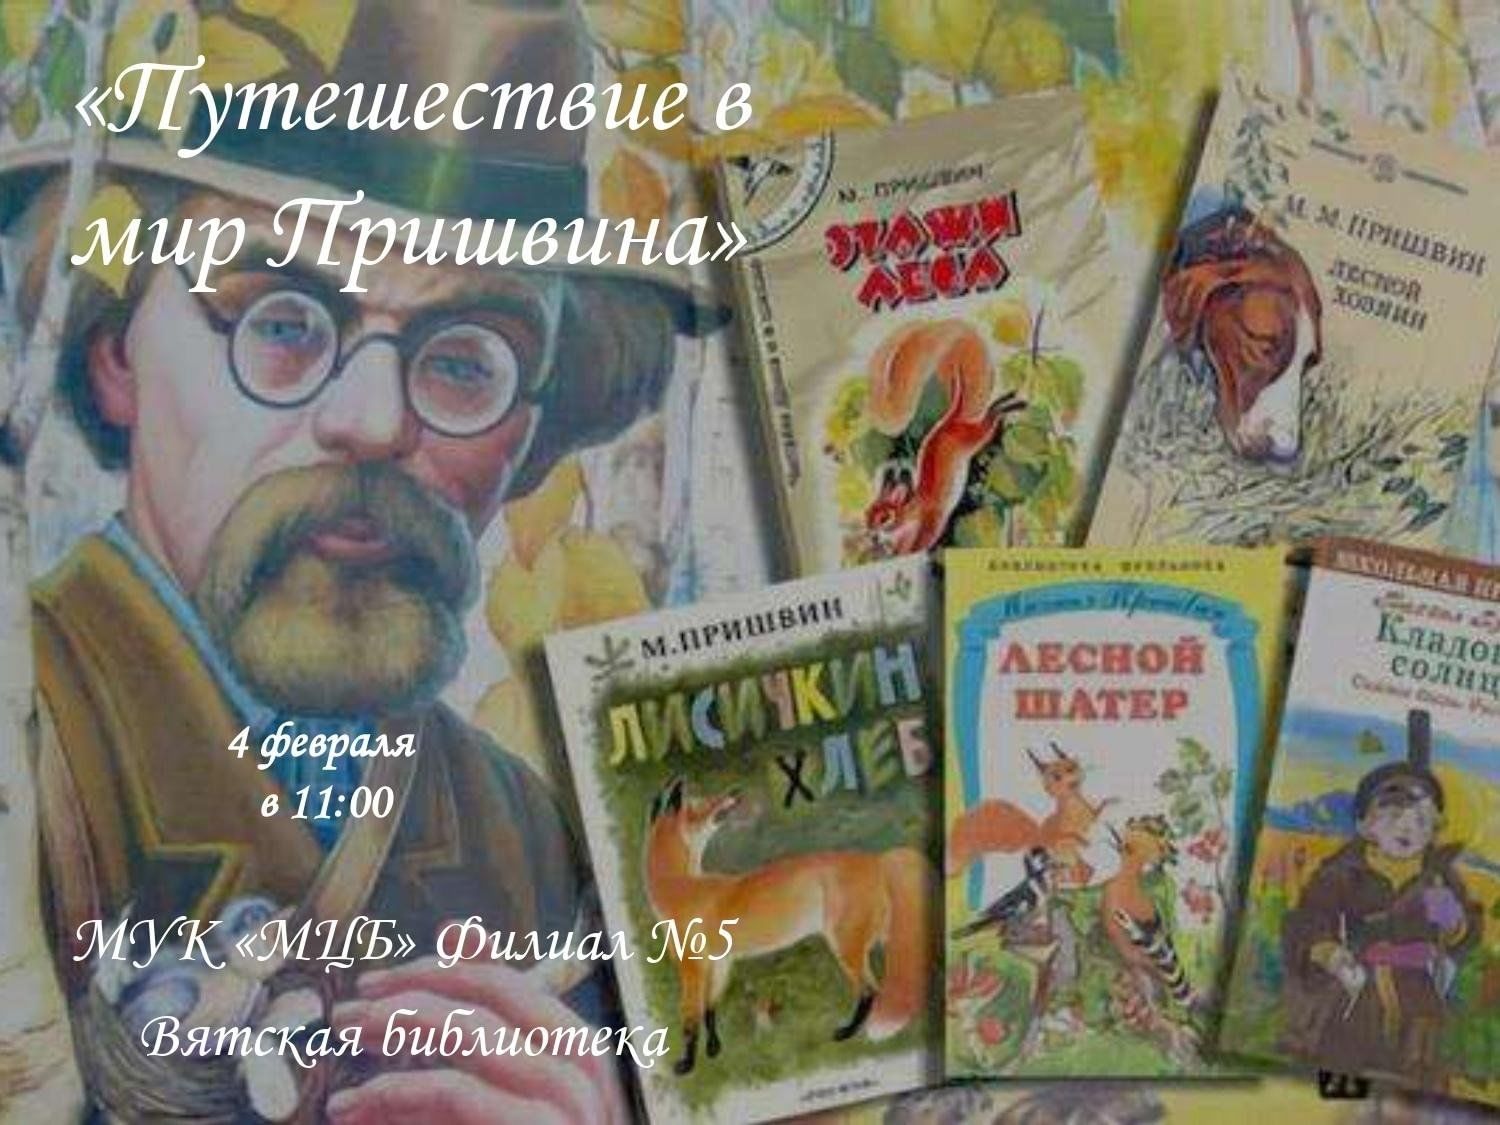 Михаил Михайлович пришвин произведения для детей